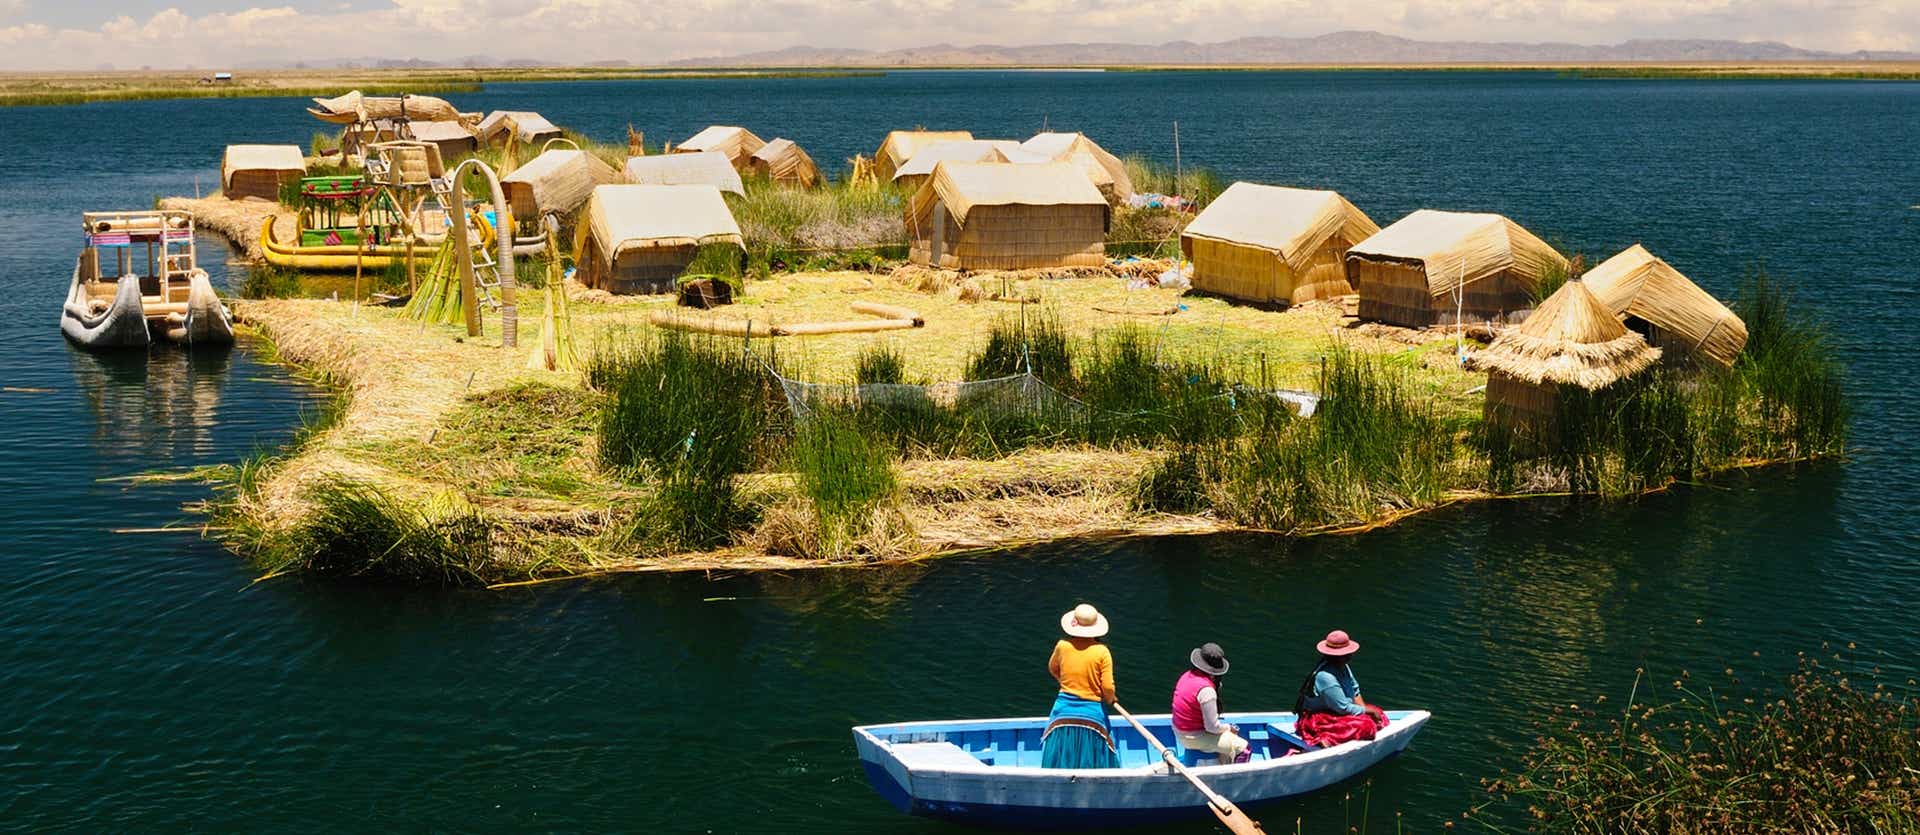 Islas de Uros <span class="iconos separador"></span> Lago Titicaca 